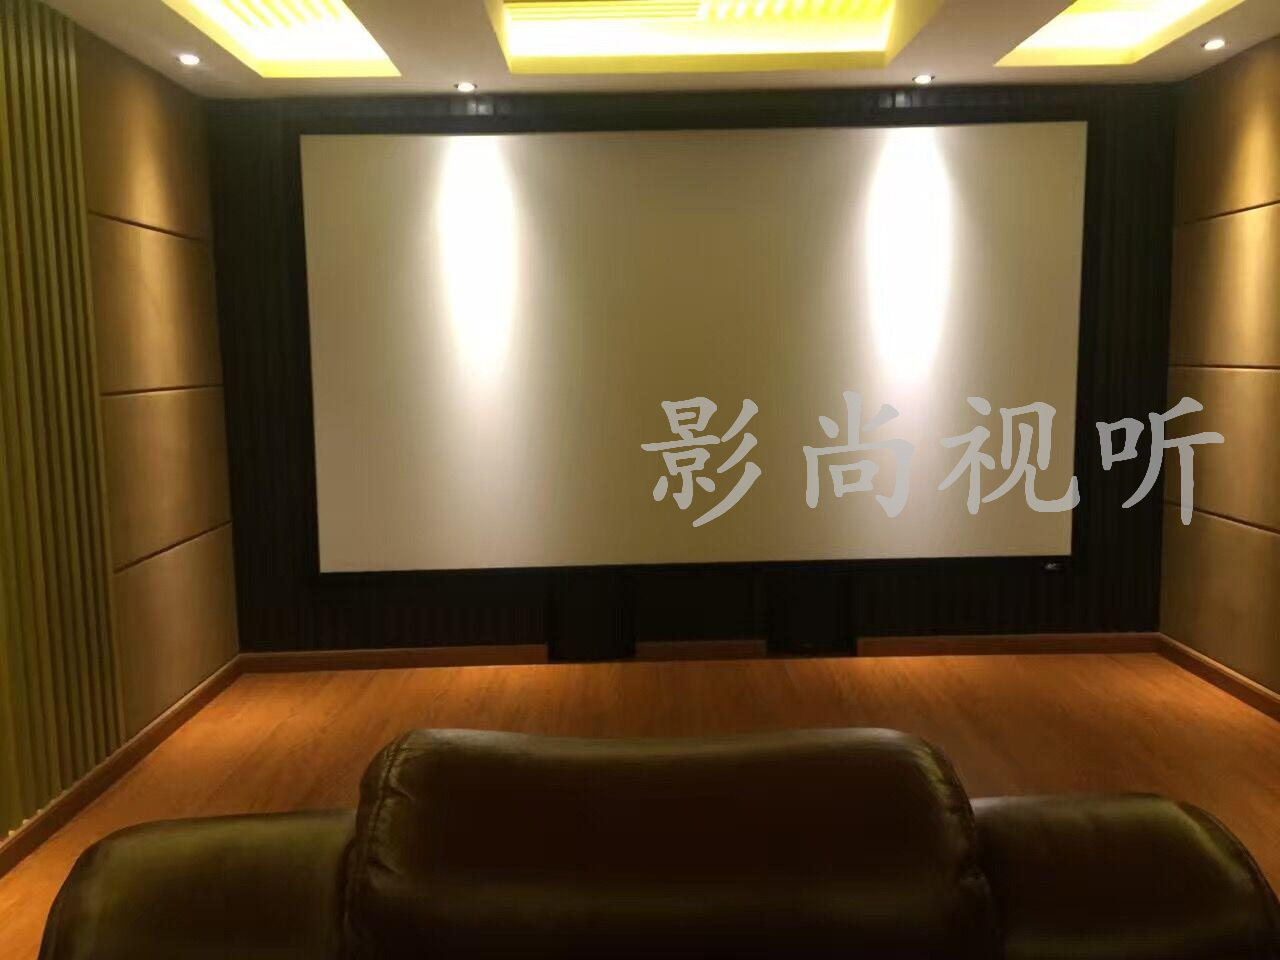 广州番禺金山谷全景声7.2.4家庭影院装修设计案例